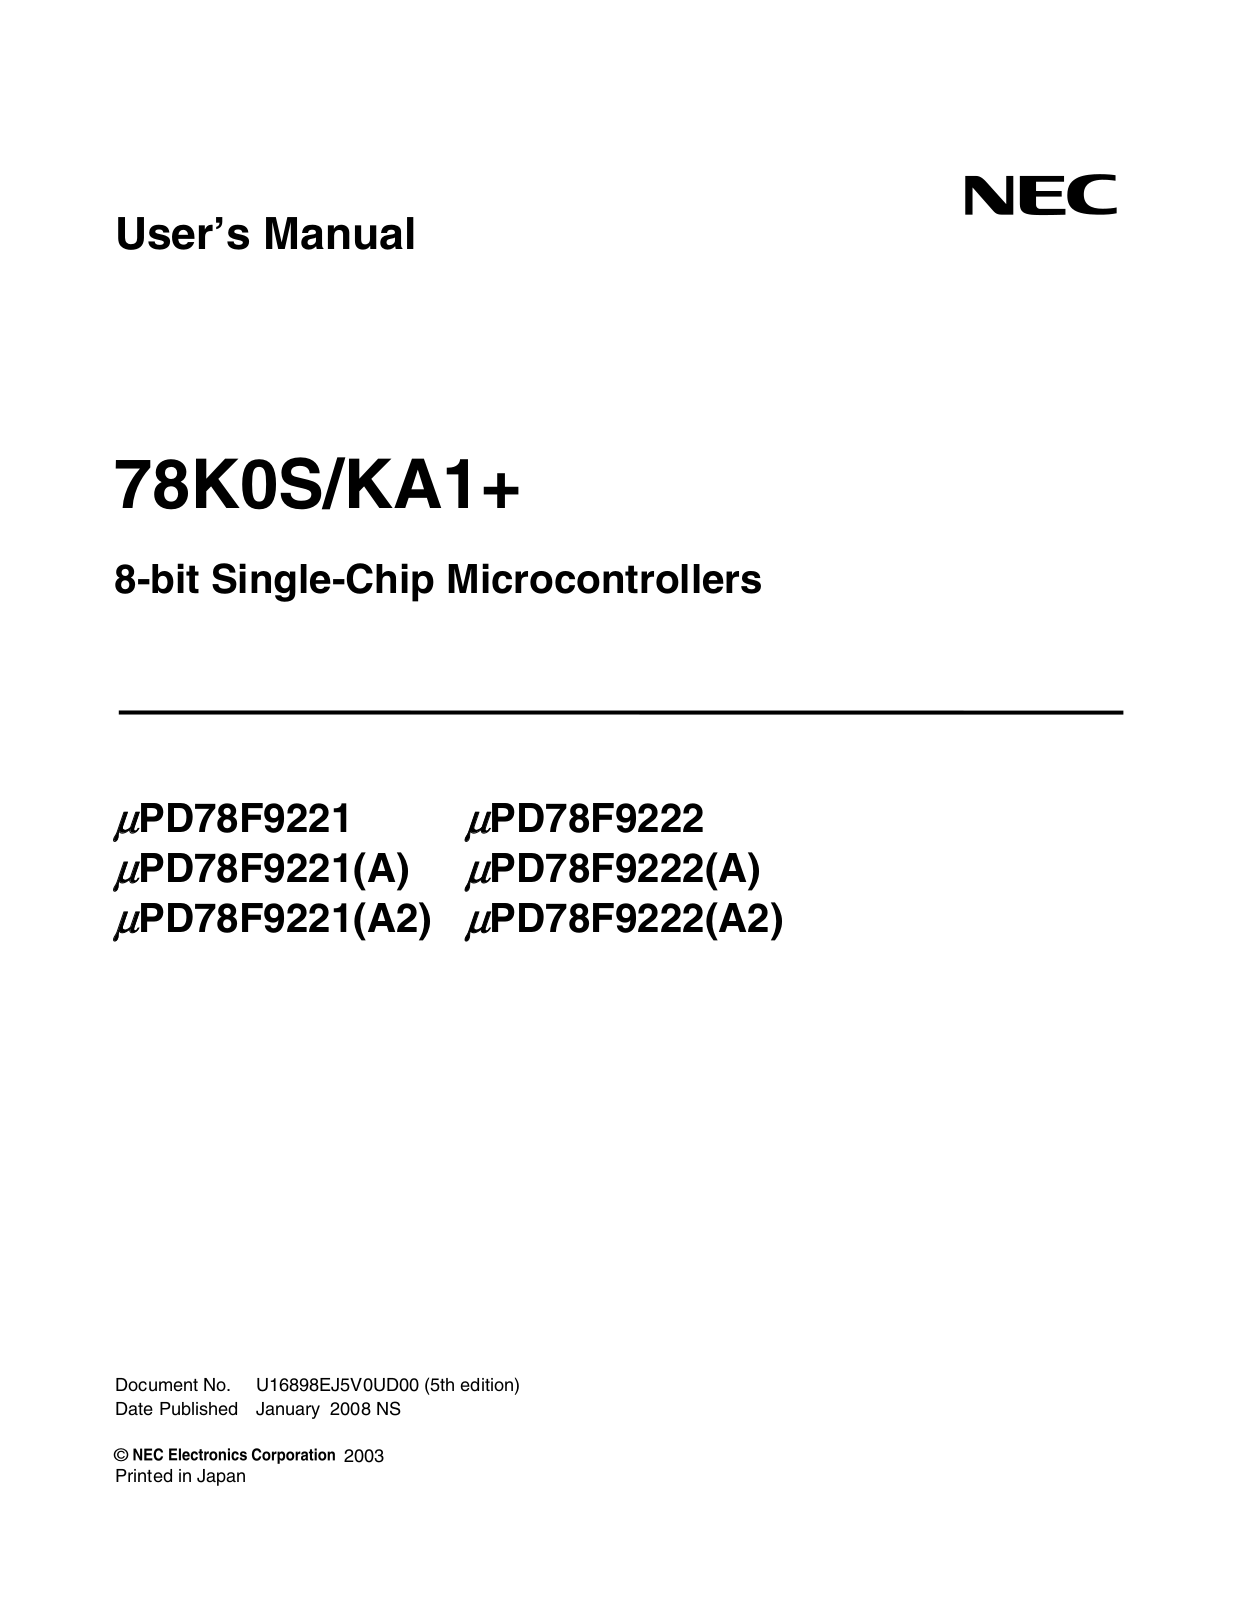 NEC PD78F9221, PD78F9222, PD78F9221-A, PD78F9222-A, PD78F9221-A2 User Guide